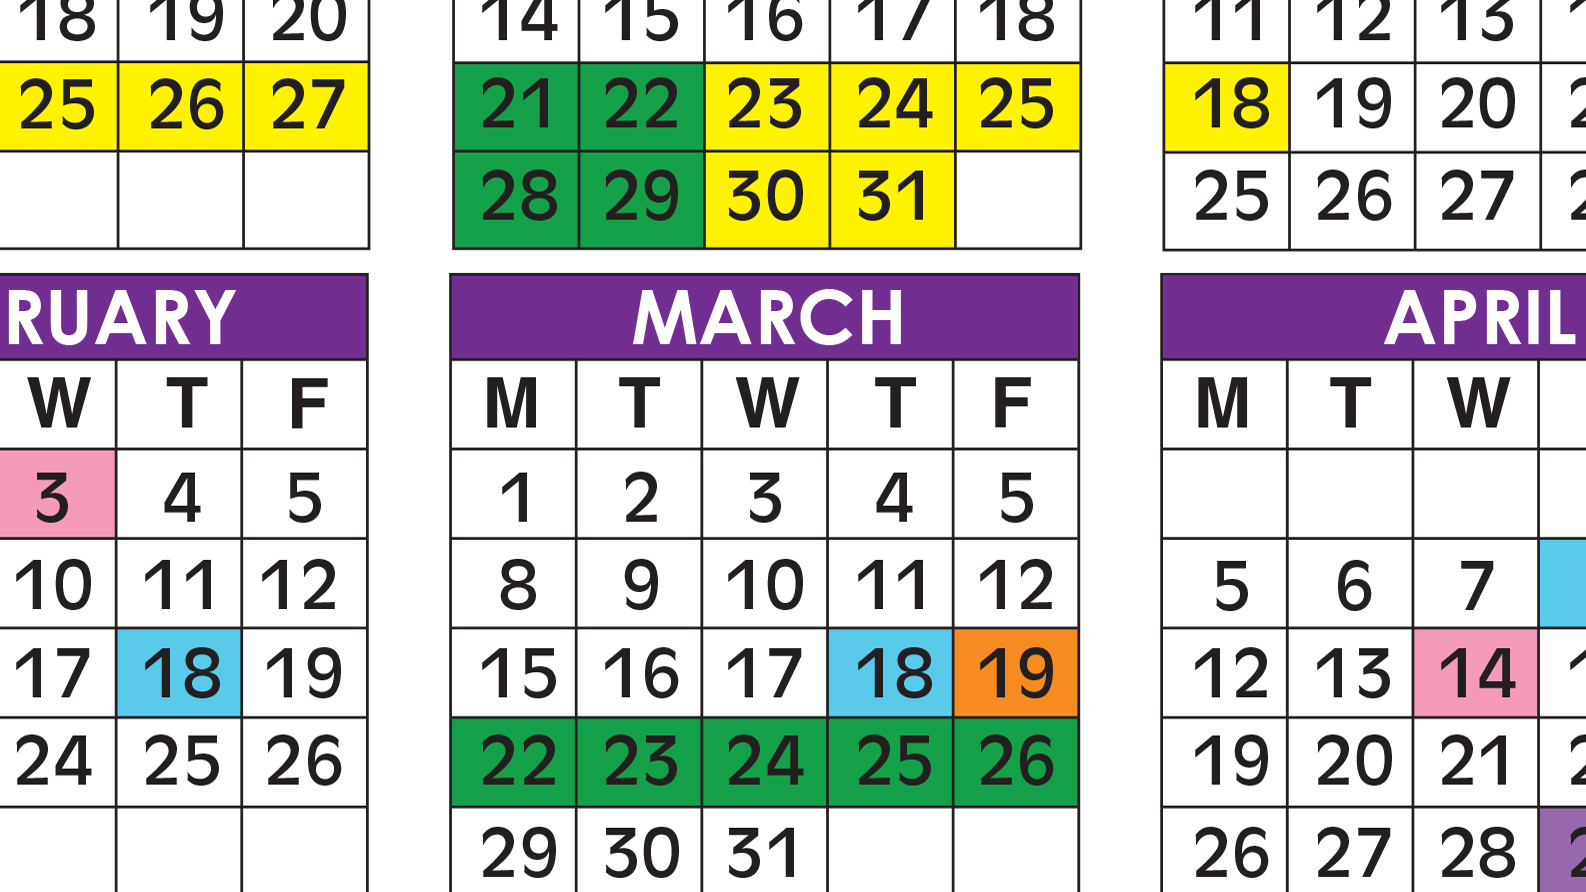 Broward School Calendar 2021-2022 Official 2020/21 Broward County Public Schools Color Calendar 